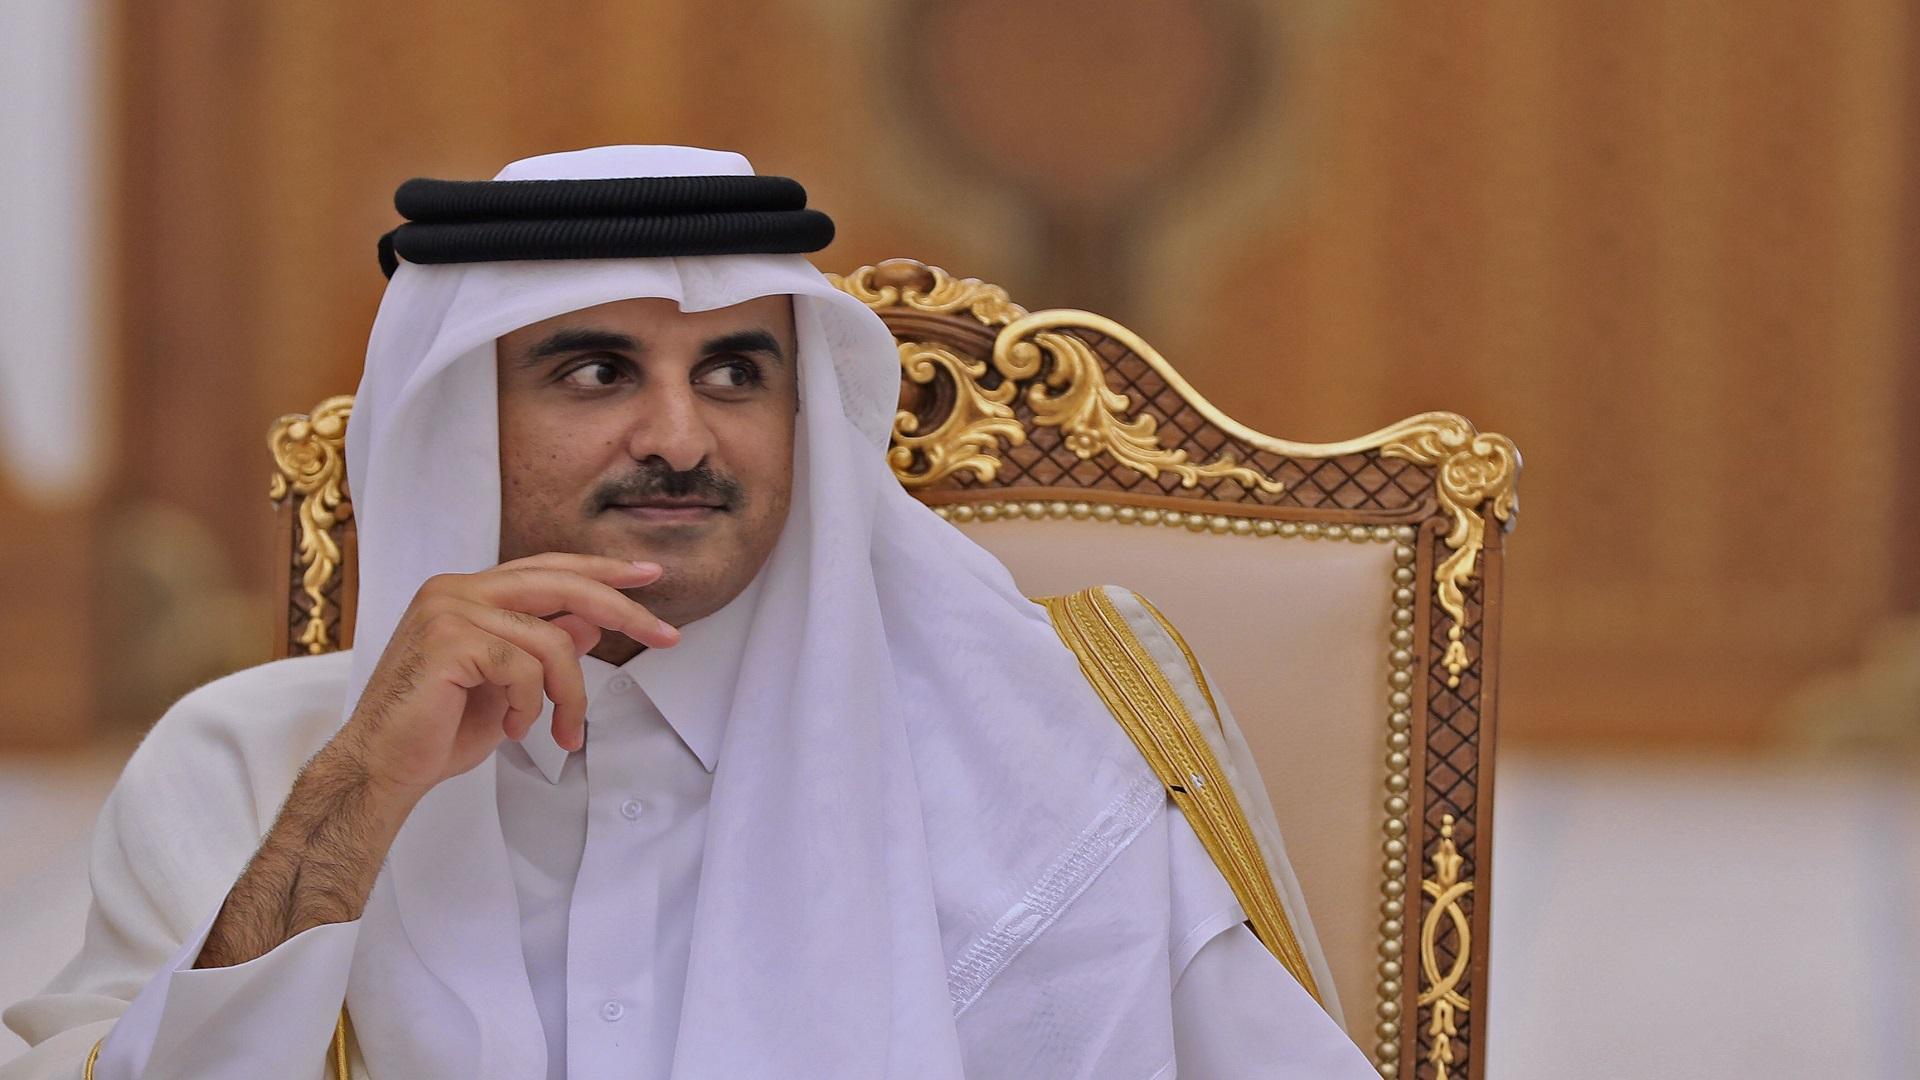 لهذا السبب.. أمير قطر يقاطع قمة الاتحاد الأوروبي والجامعة العربية بمصر